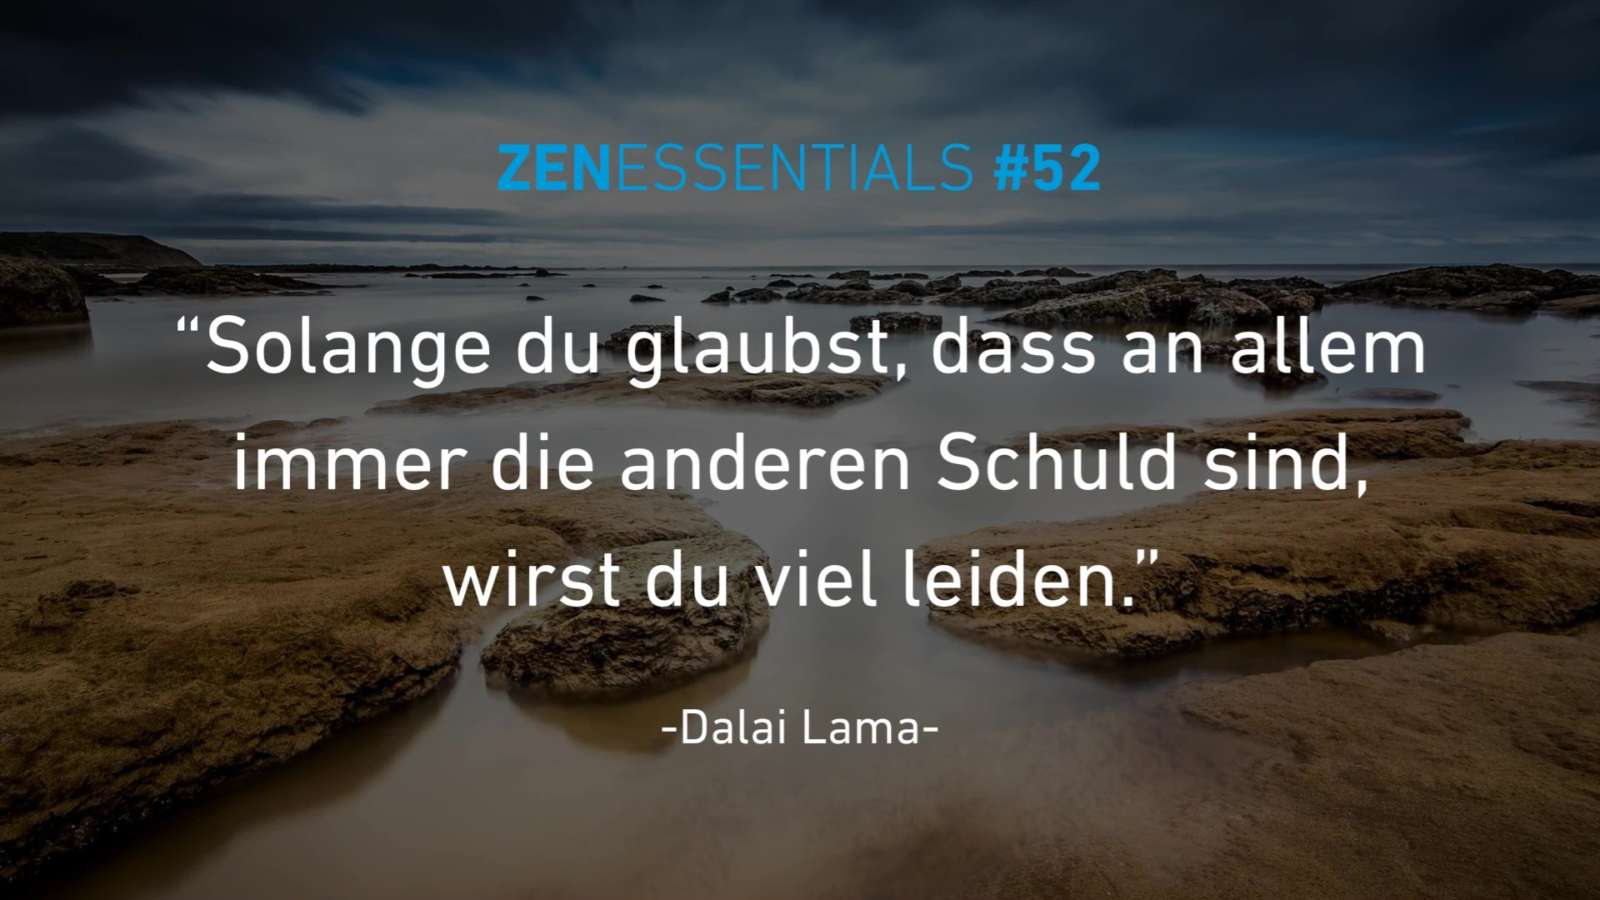 zenessentials 52 signactive Dalai Lama Weisheiten Zitate Sprüche Aussagen